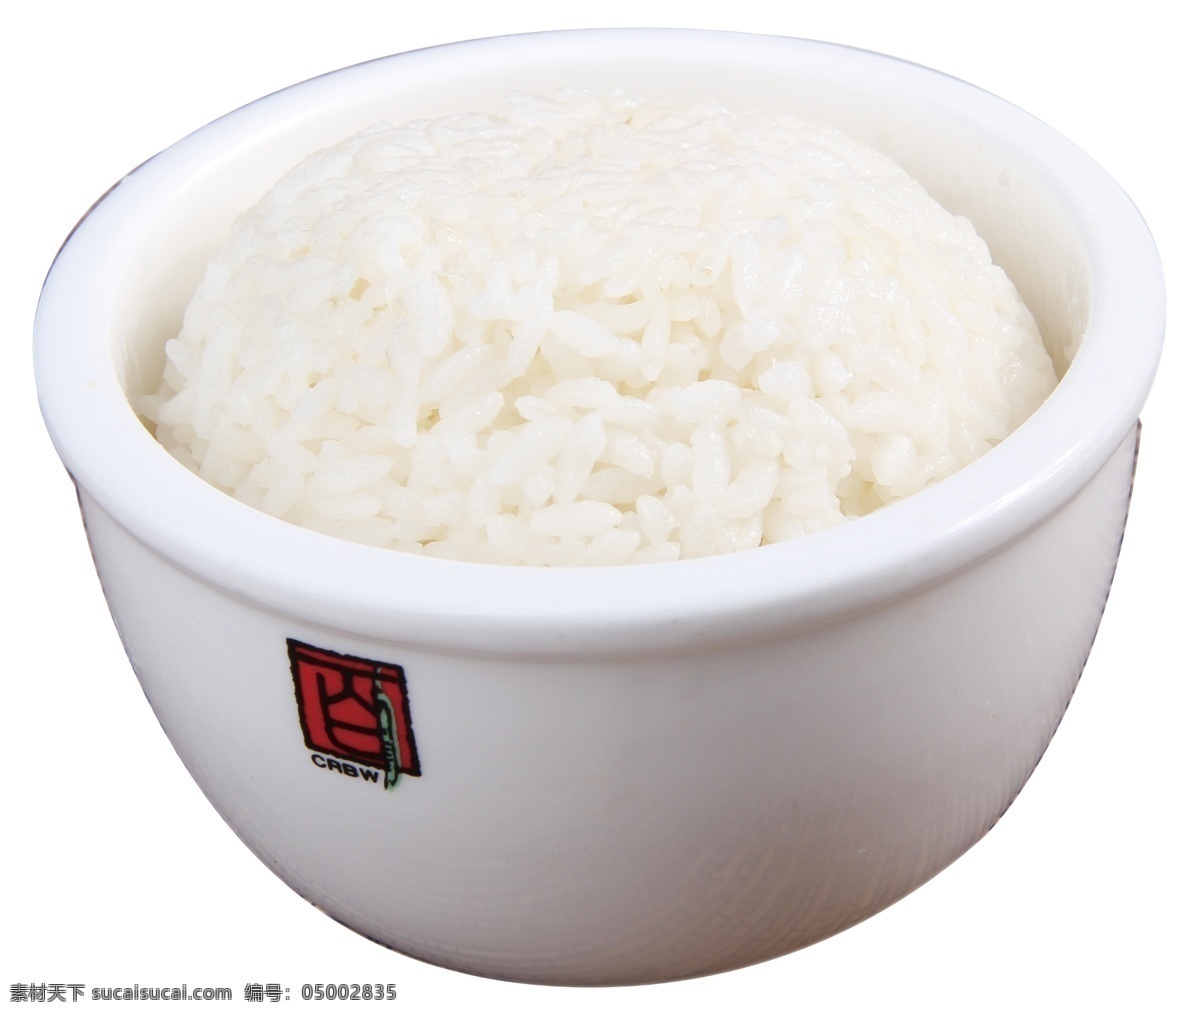 大米 鲜米饭 白米饭 干饭 传统美食 餐饮美食 川菜